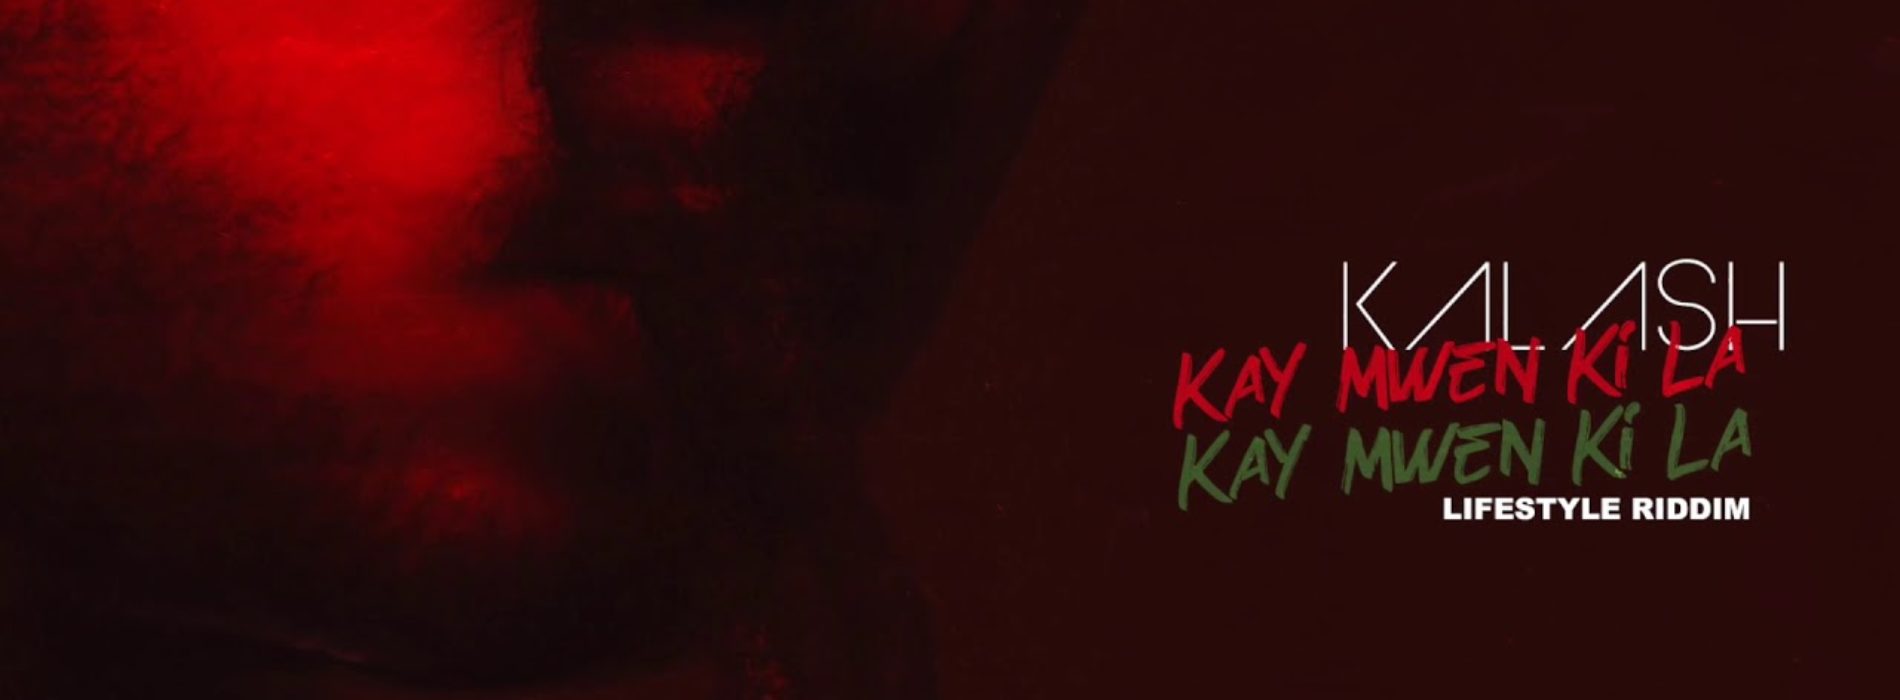 KALASH- Kay Mwen Ki La ( Lifestyle Riddim) – Janvier 2020